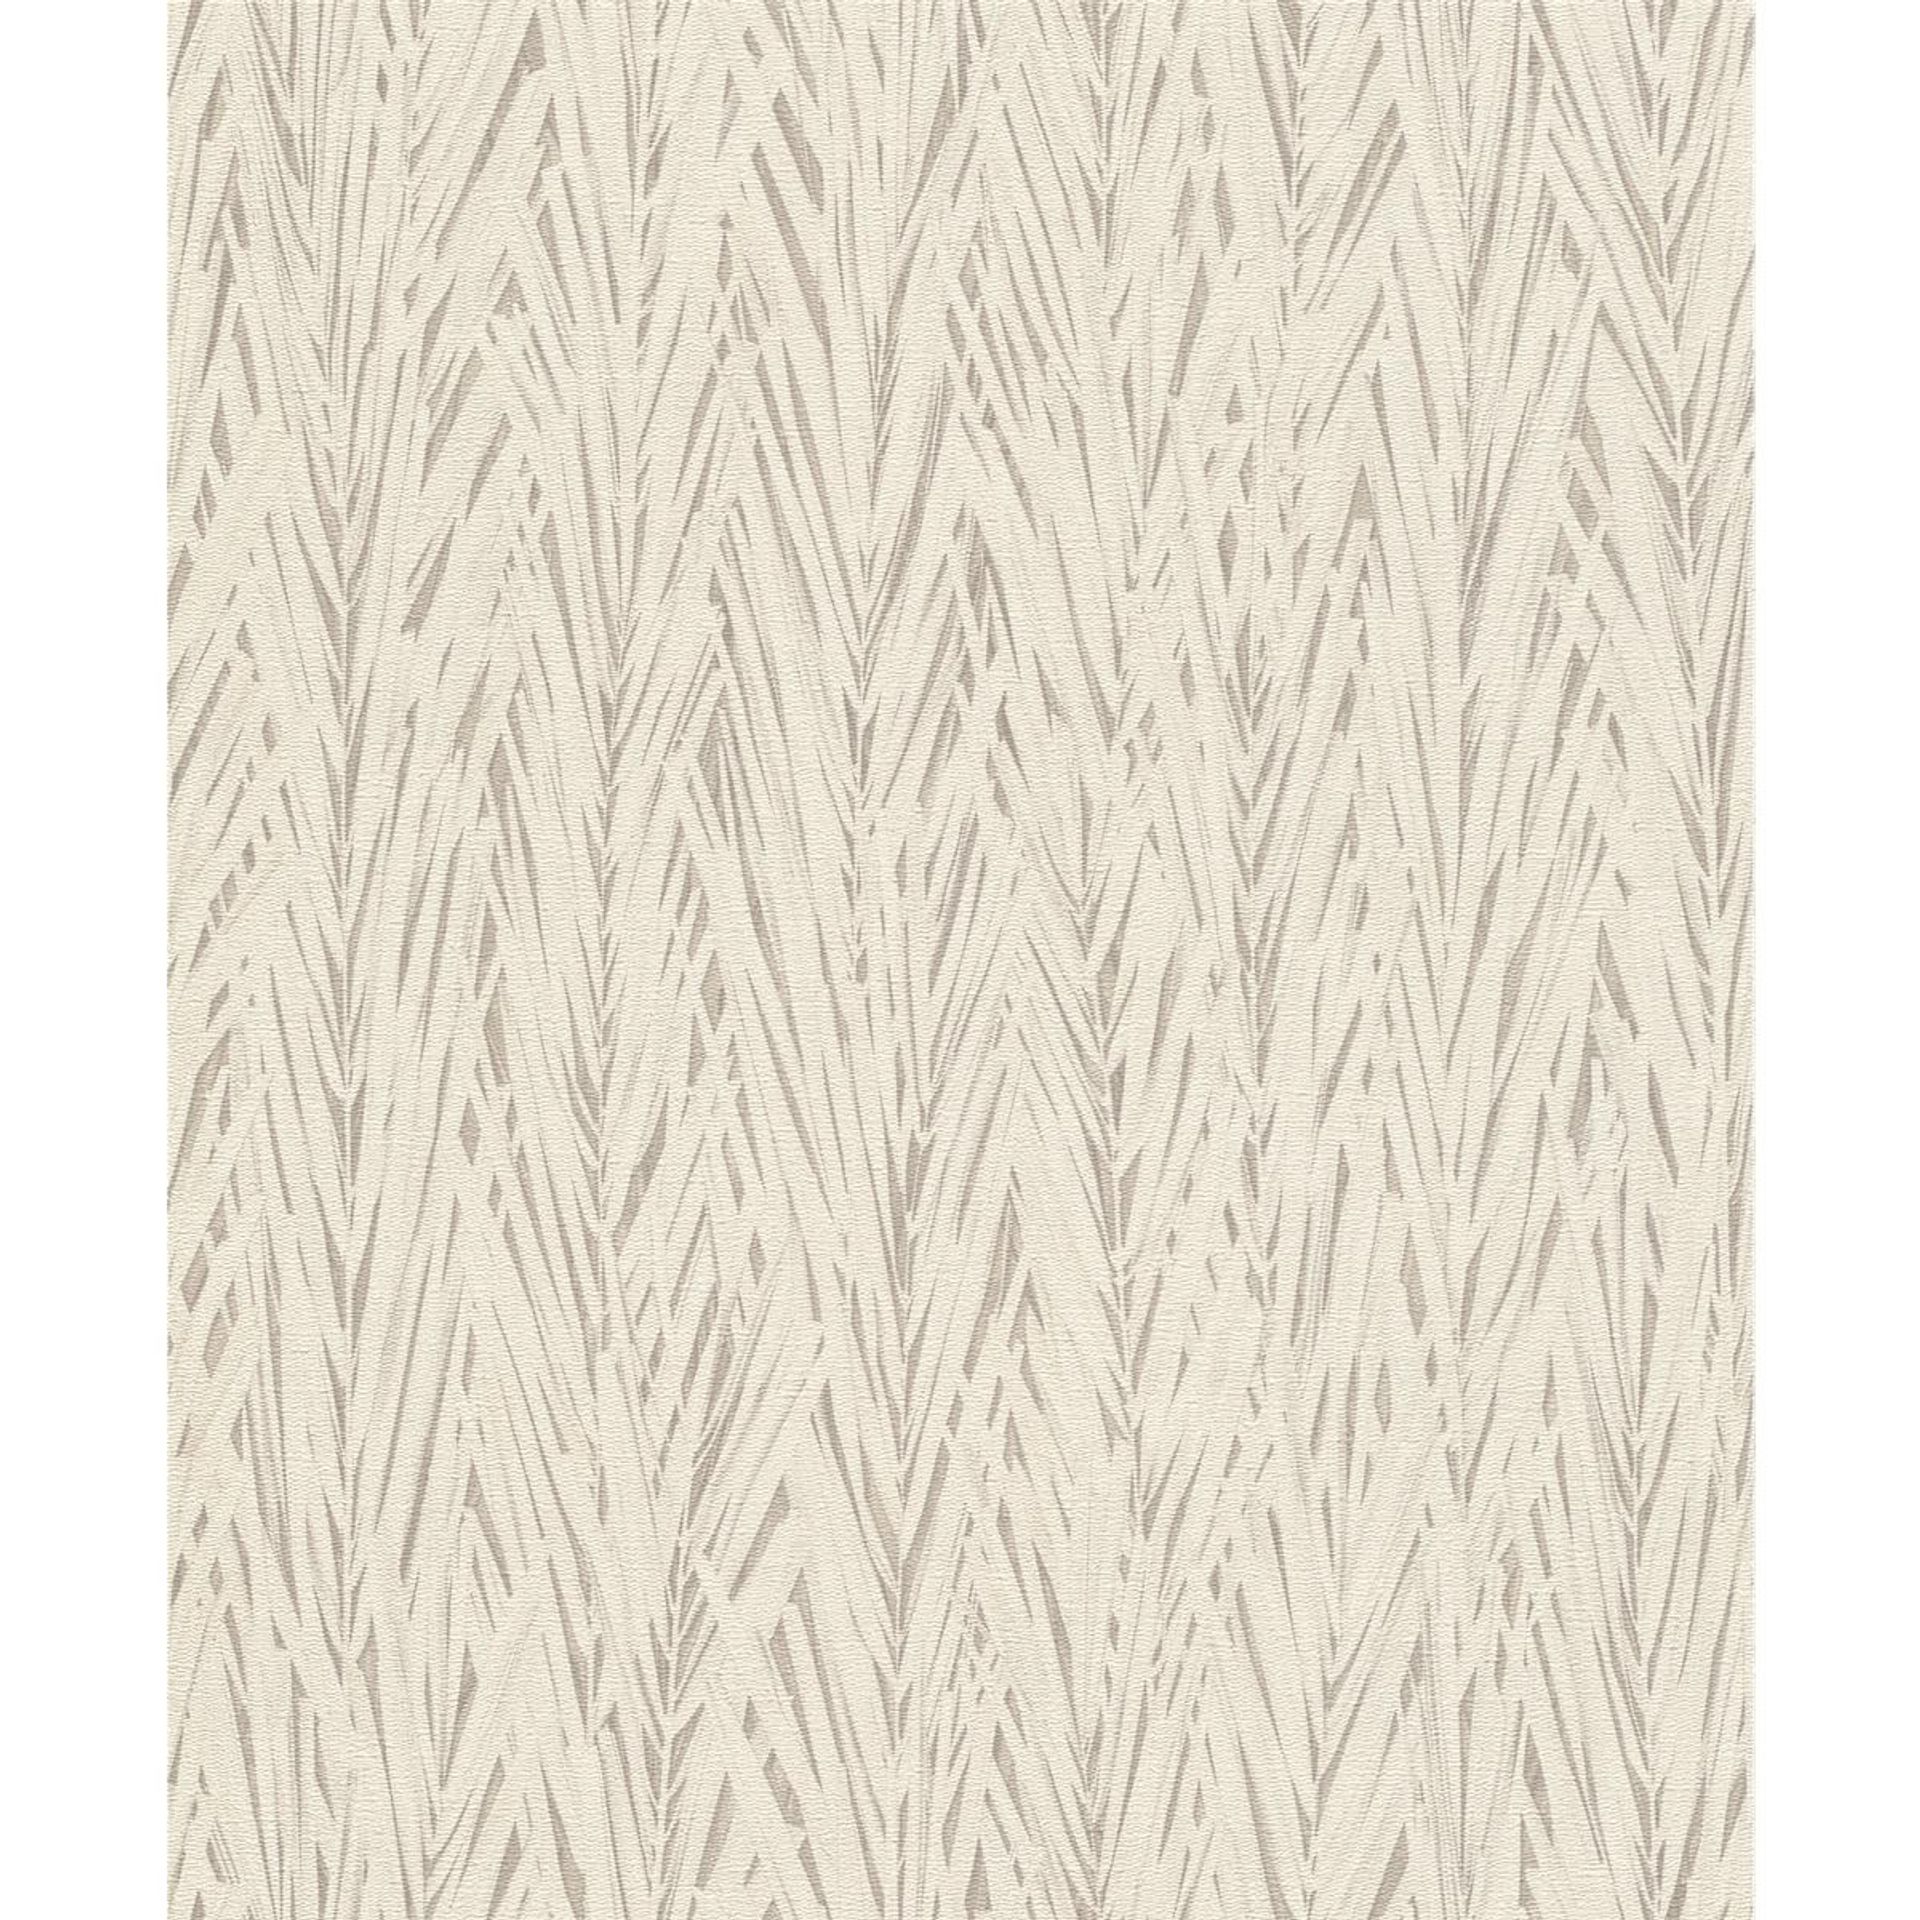 Tapete Modern floral Vinyltapete Offwhite versetzter Ansatz 53 cm x 10,05 m